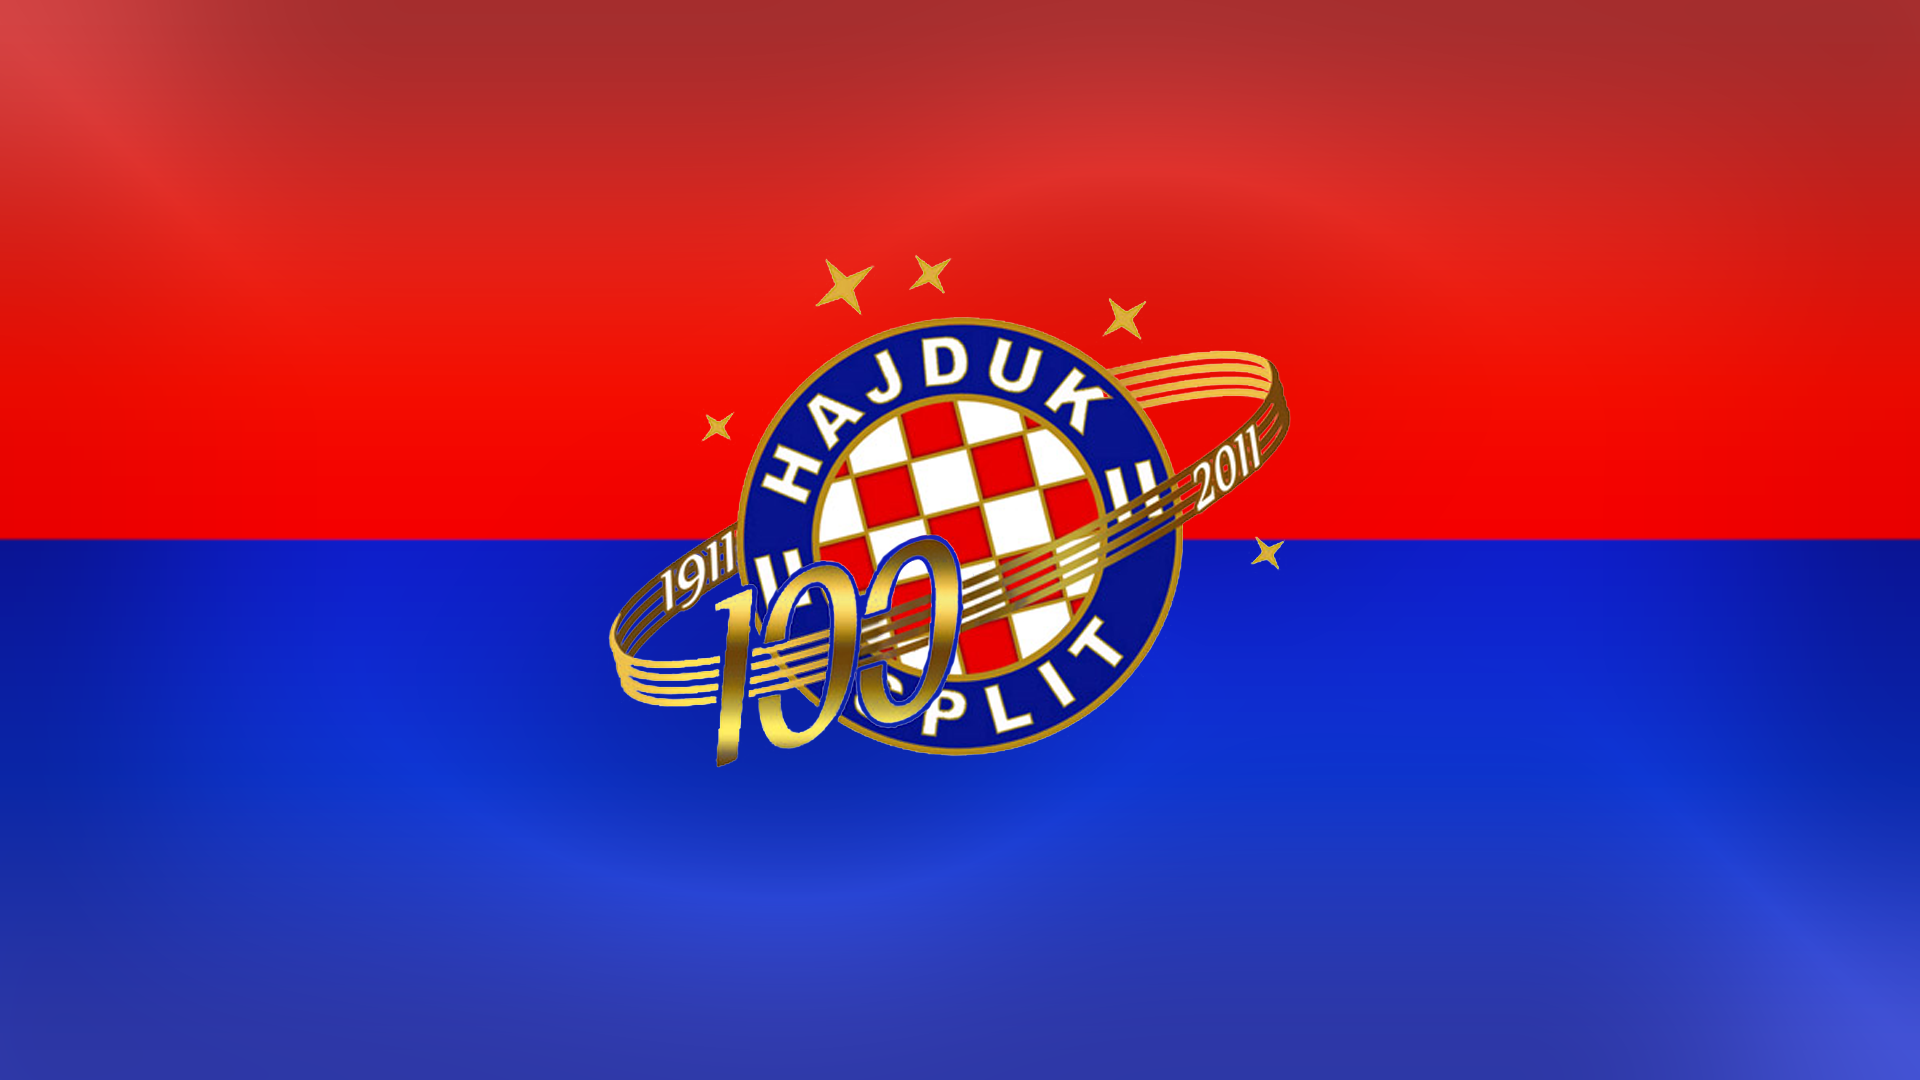 File:Dinamo Zagreb against Hajduk Split 2.jpg - Wikimedia Commons